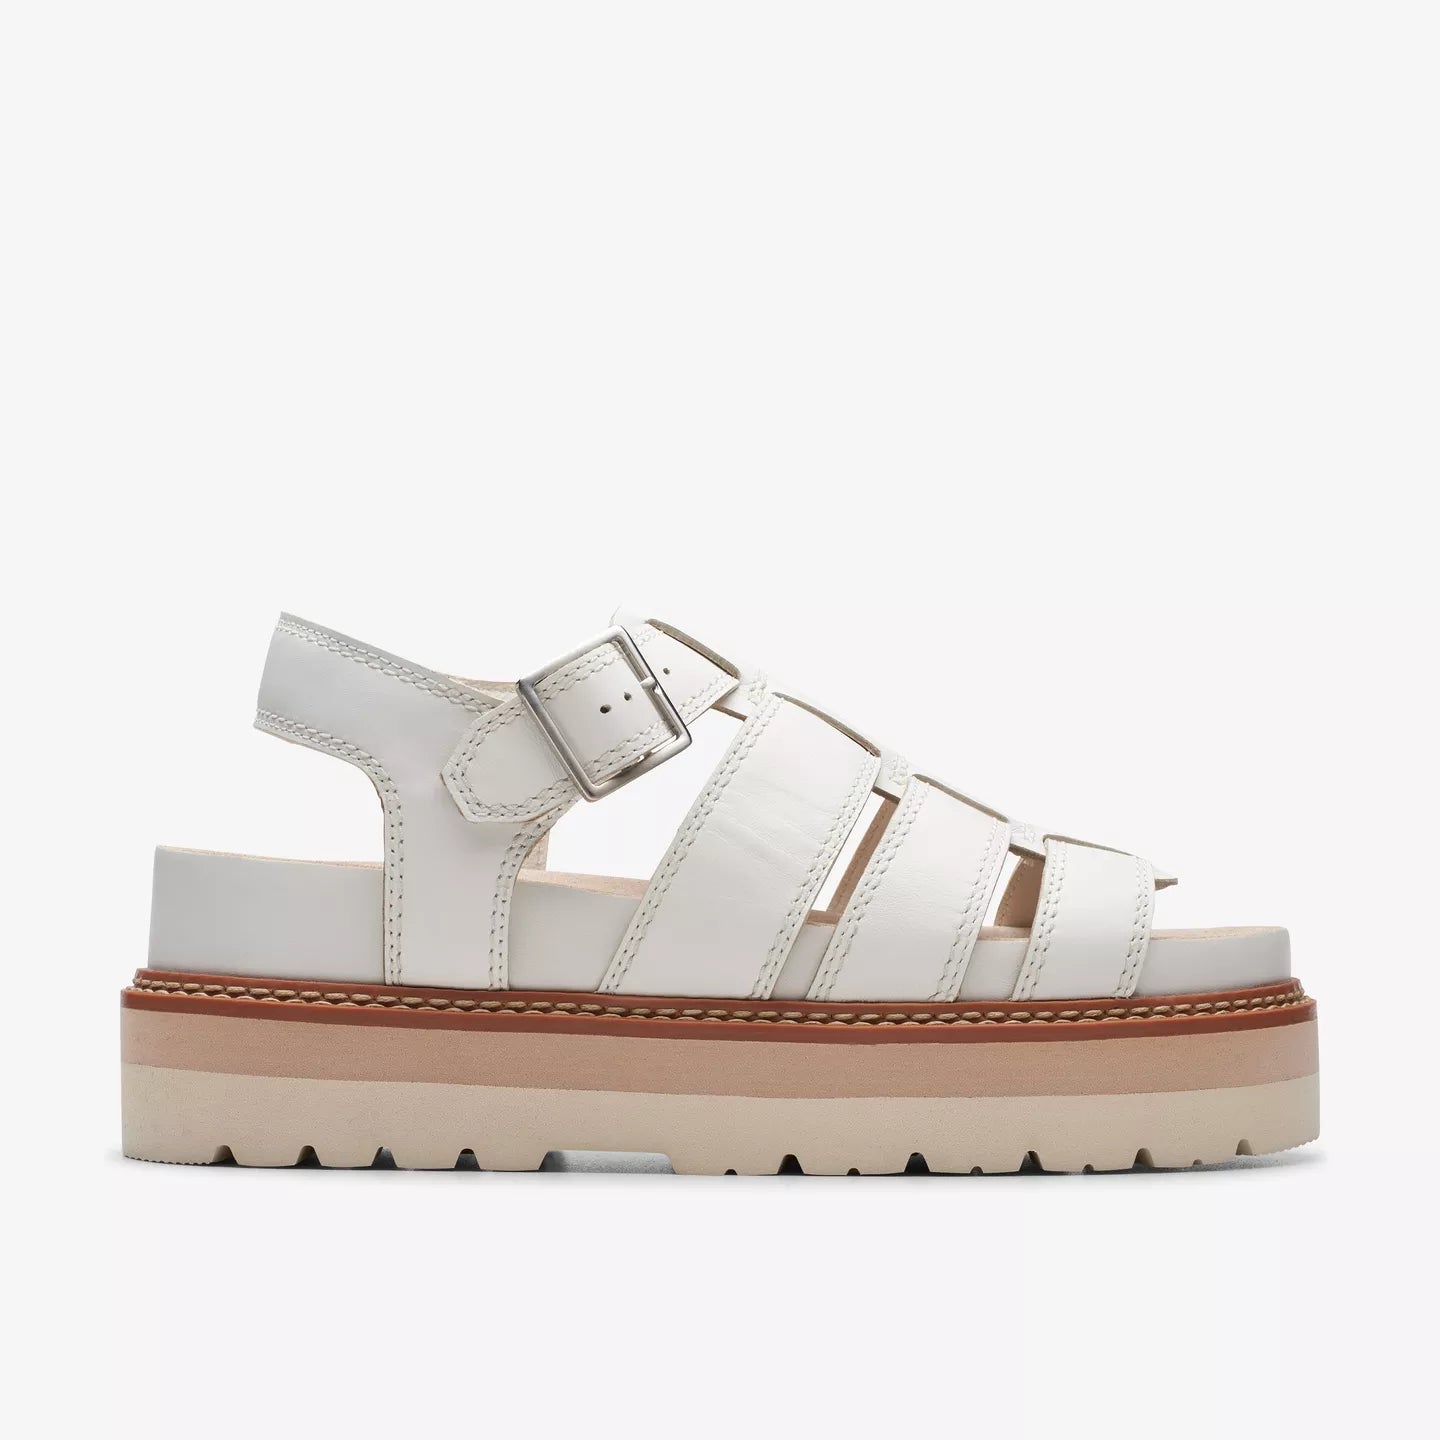 Clarks Orianna Twist Off White Leather Sandals